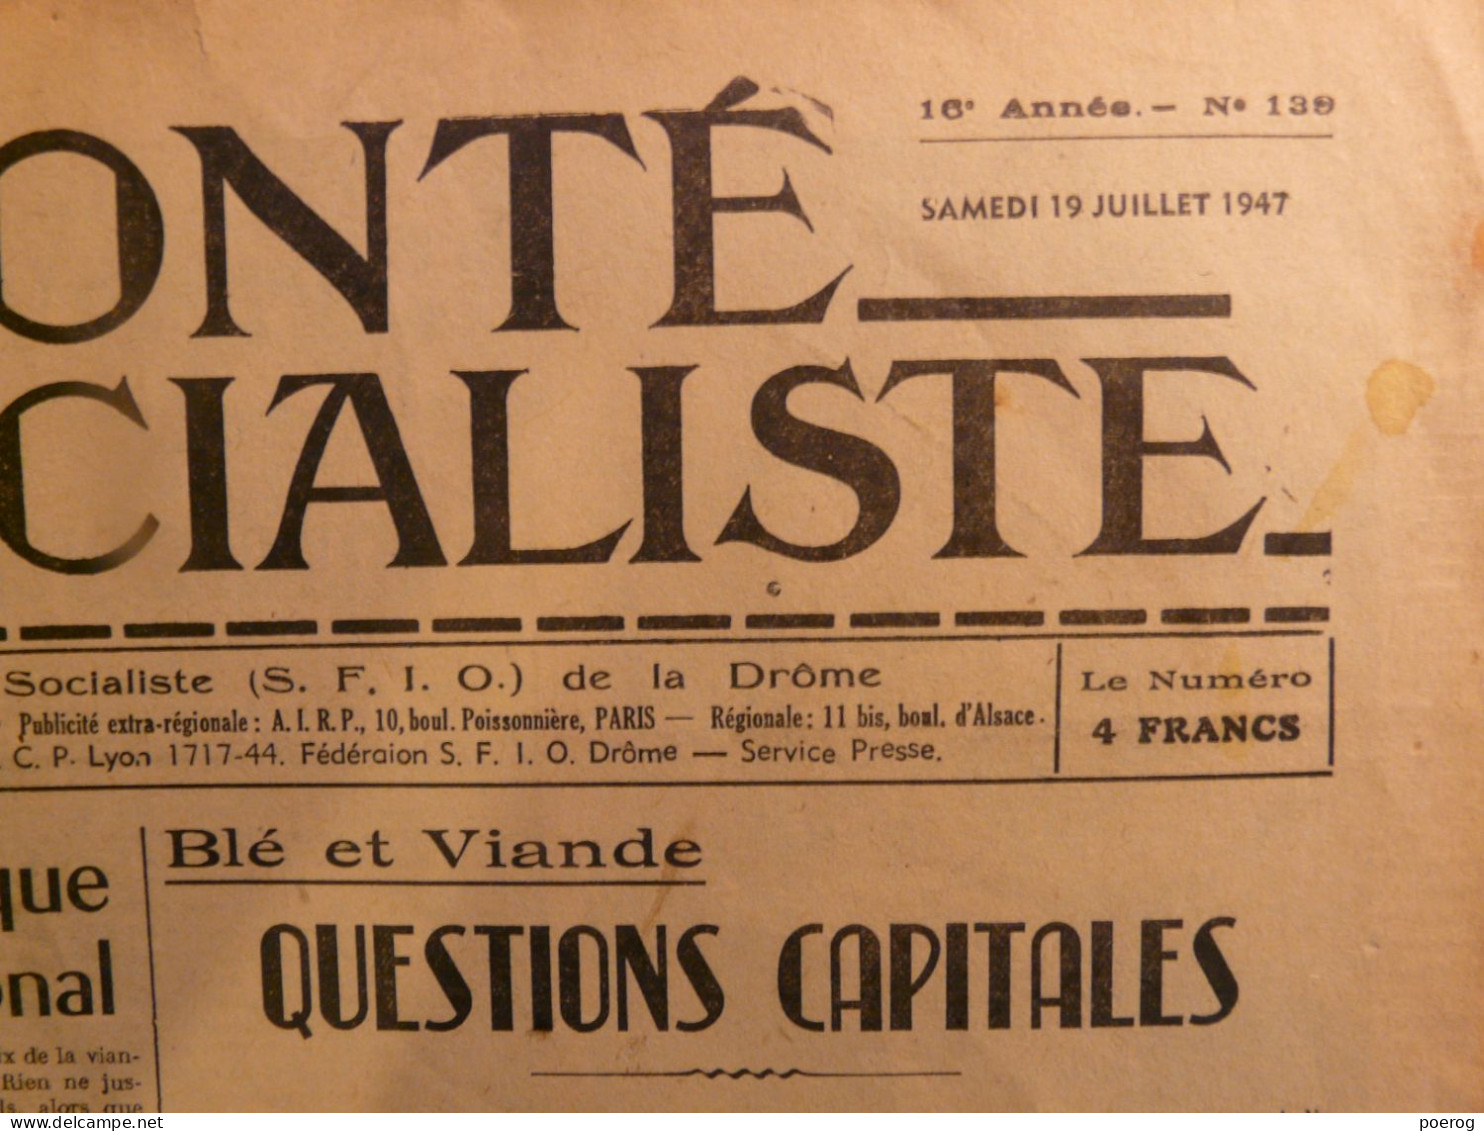 LA VOLONTE SOCIALISTE Du 19 JUILLET 1947 - BLE ET VIANDE QUESTIONS CAPITALES - SFIO DE LA DROME - SYNDICALISME - Informations Générales